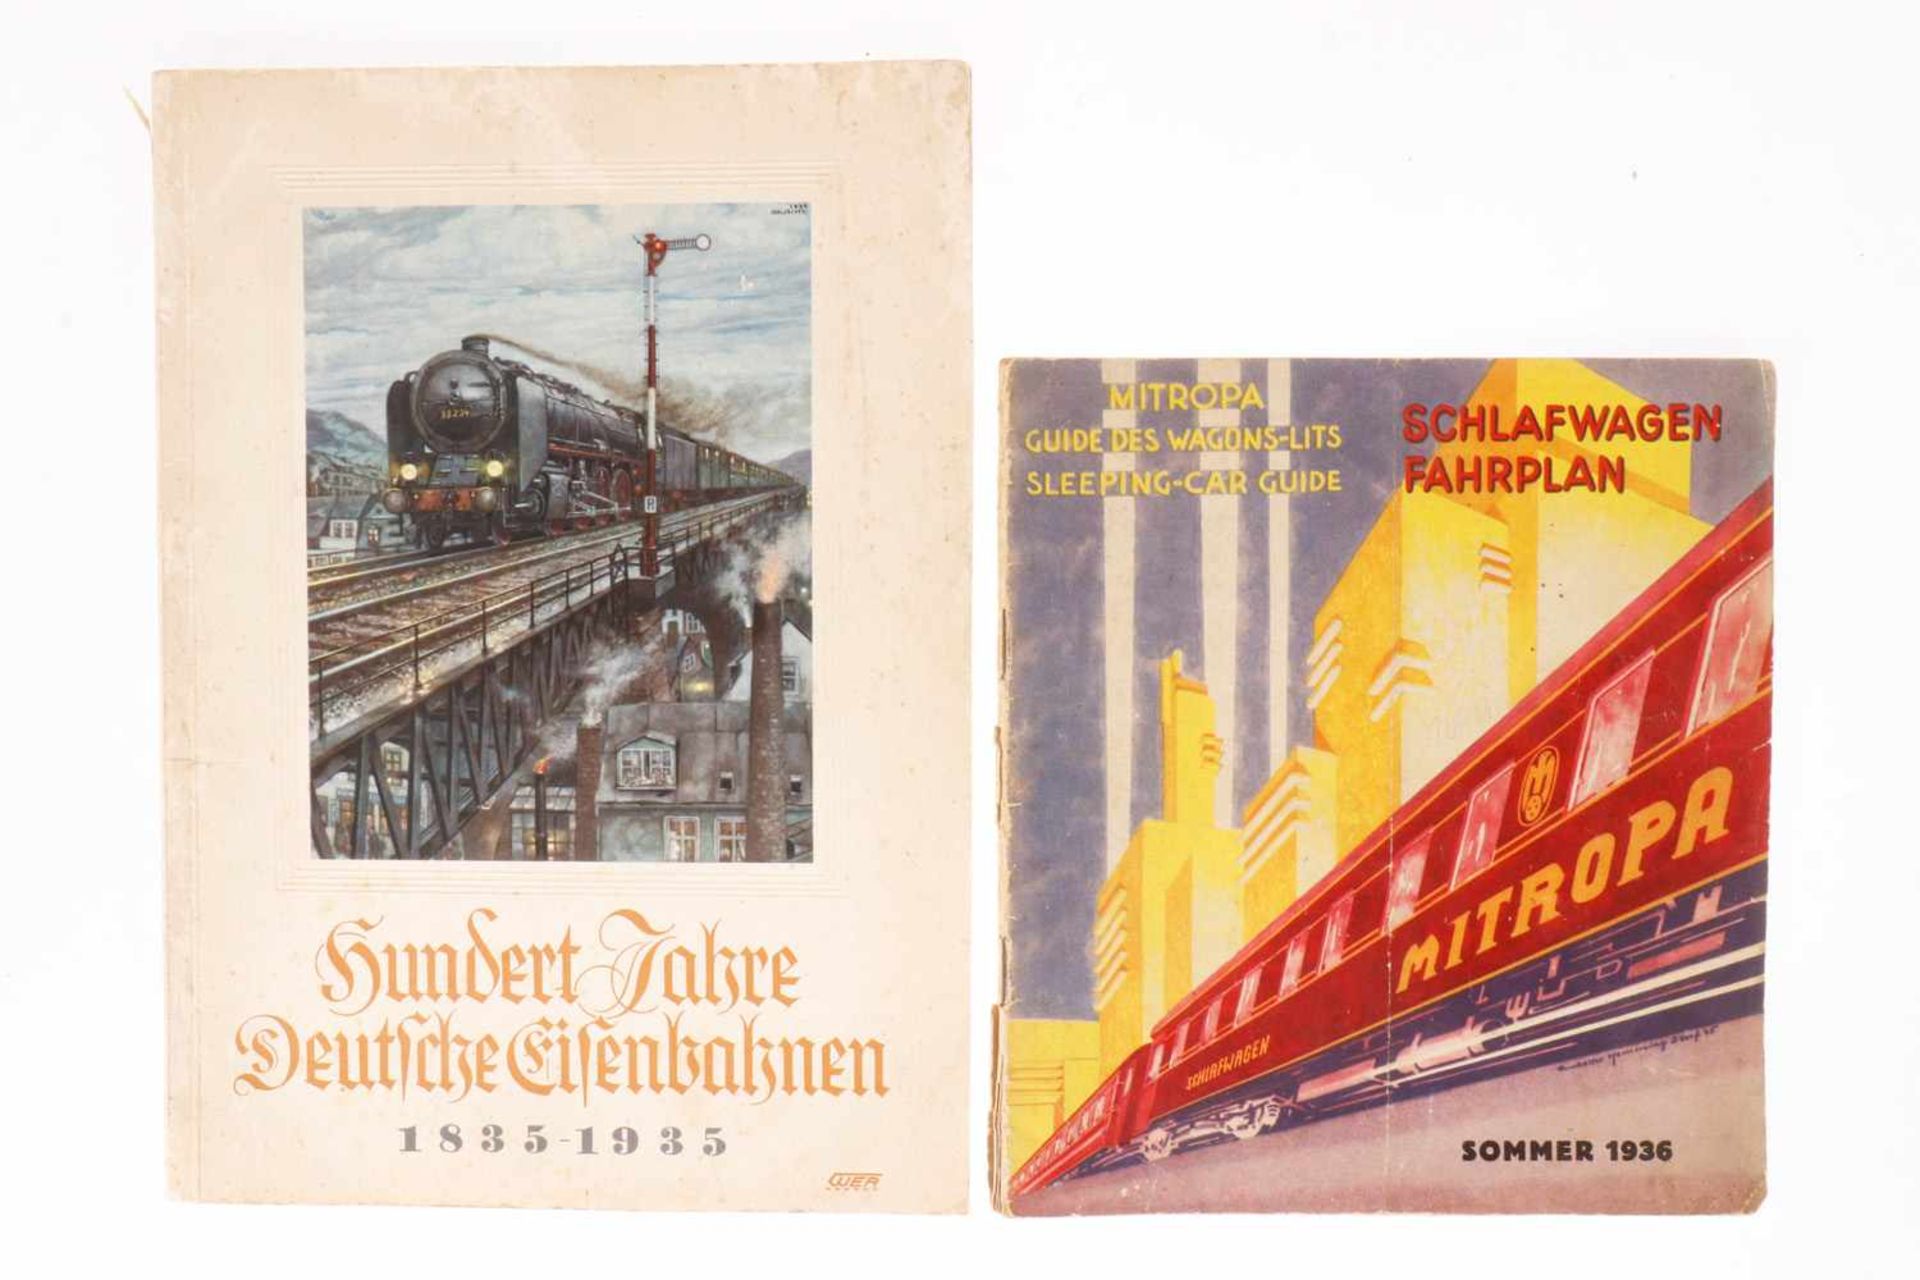 2 Hefte "Mitropa Schlafwagen Fahrplan Sommer 1936" und "Hundert Jahre deutsche Eisenbahnen 1835-